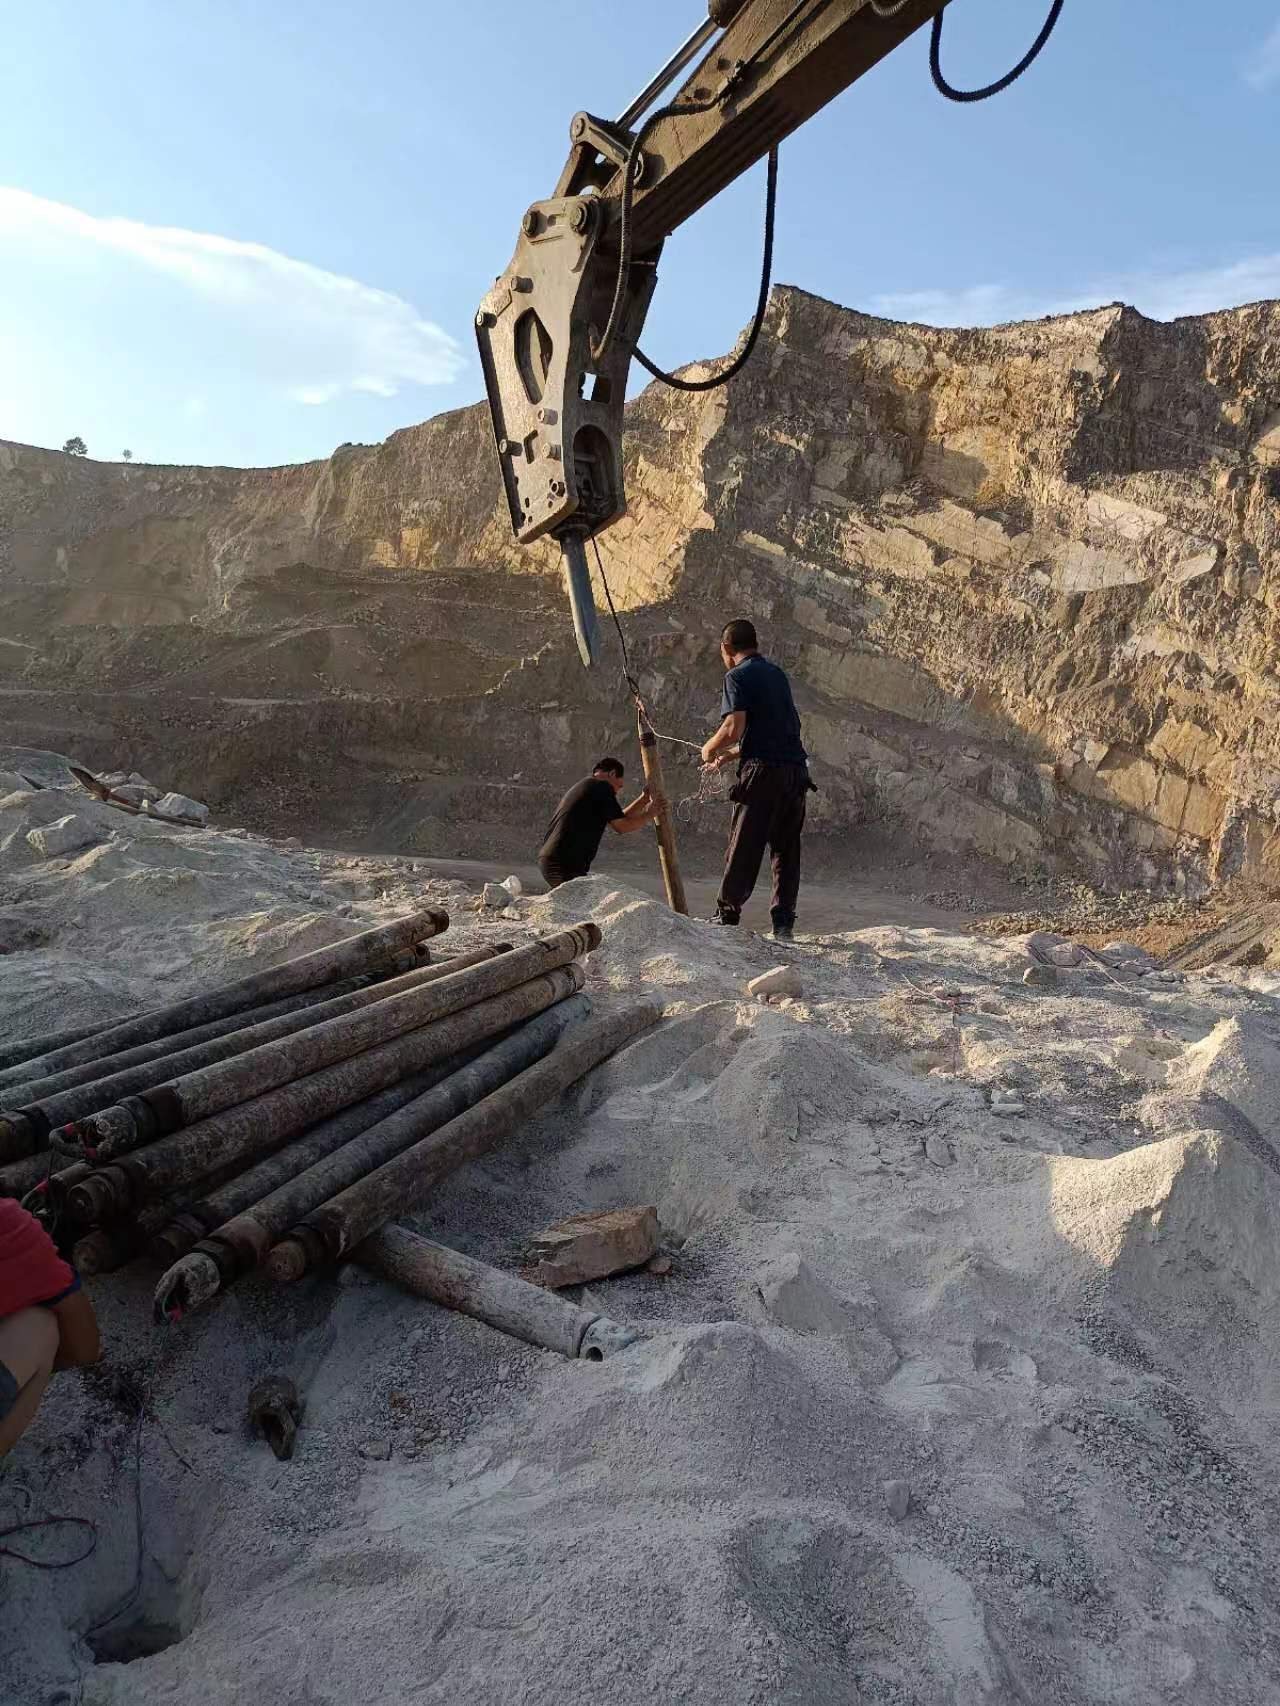 广西柳州二氧化碳气体爆破矿山机械设备厂家